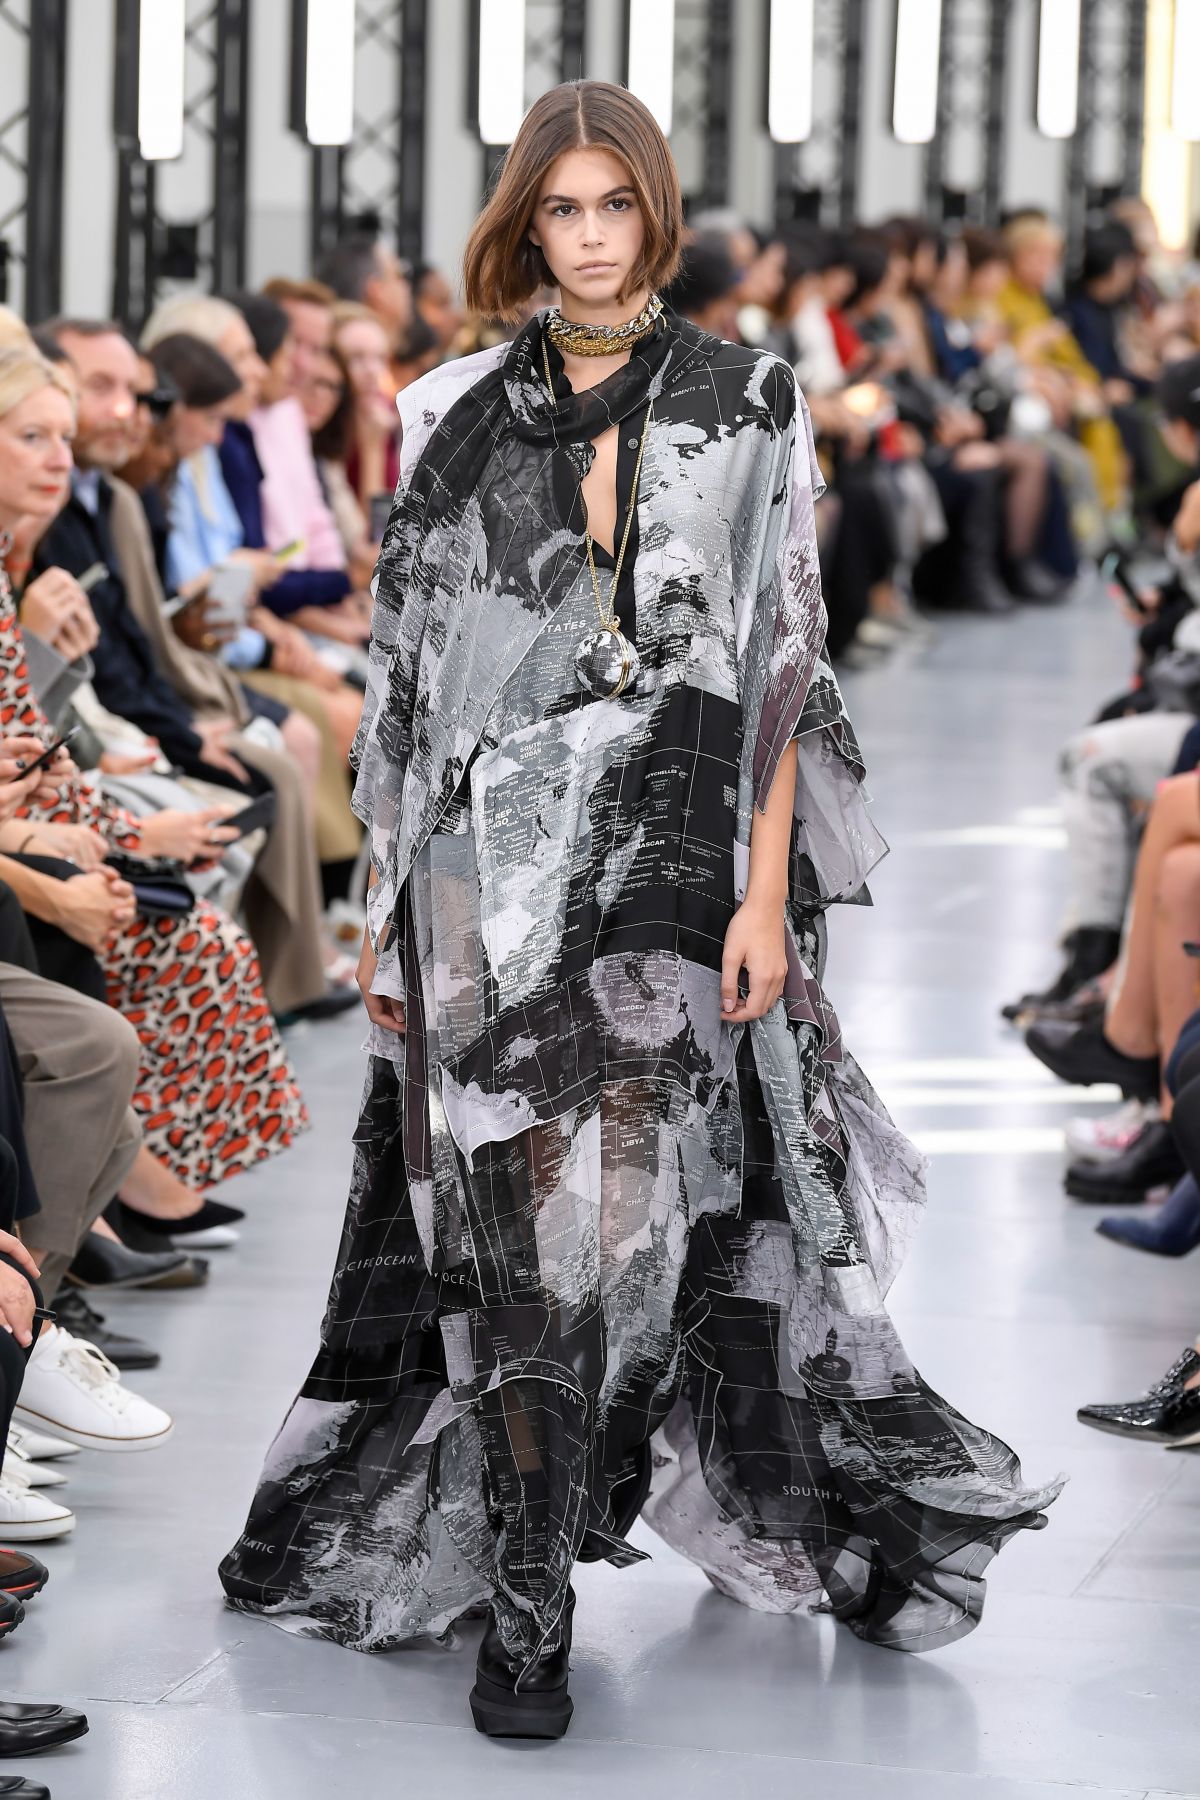 KAIA GERBER at Sacai Runway Show at Paris Fashion Week 09/30/2019 ...